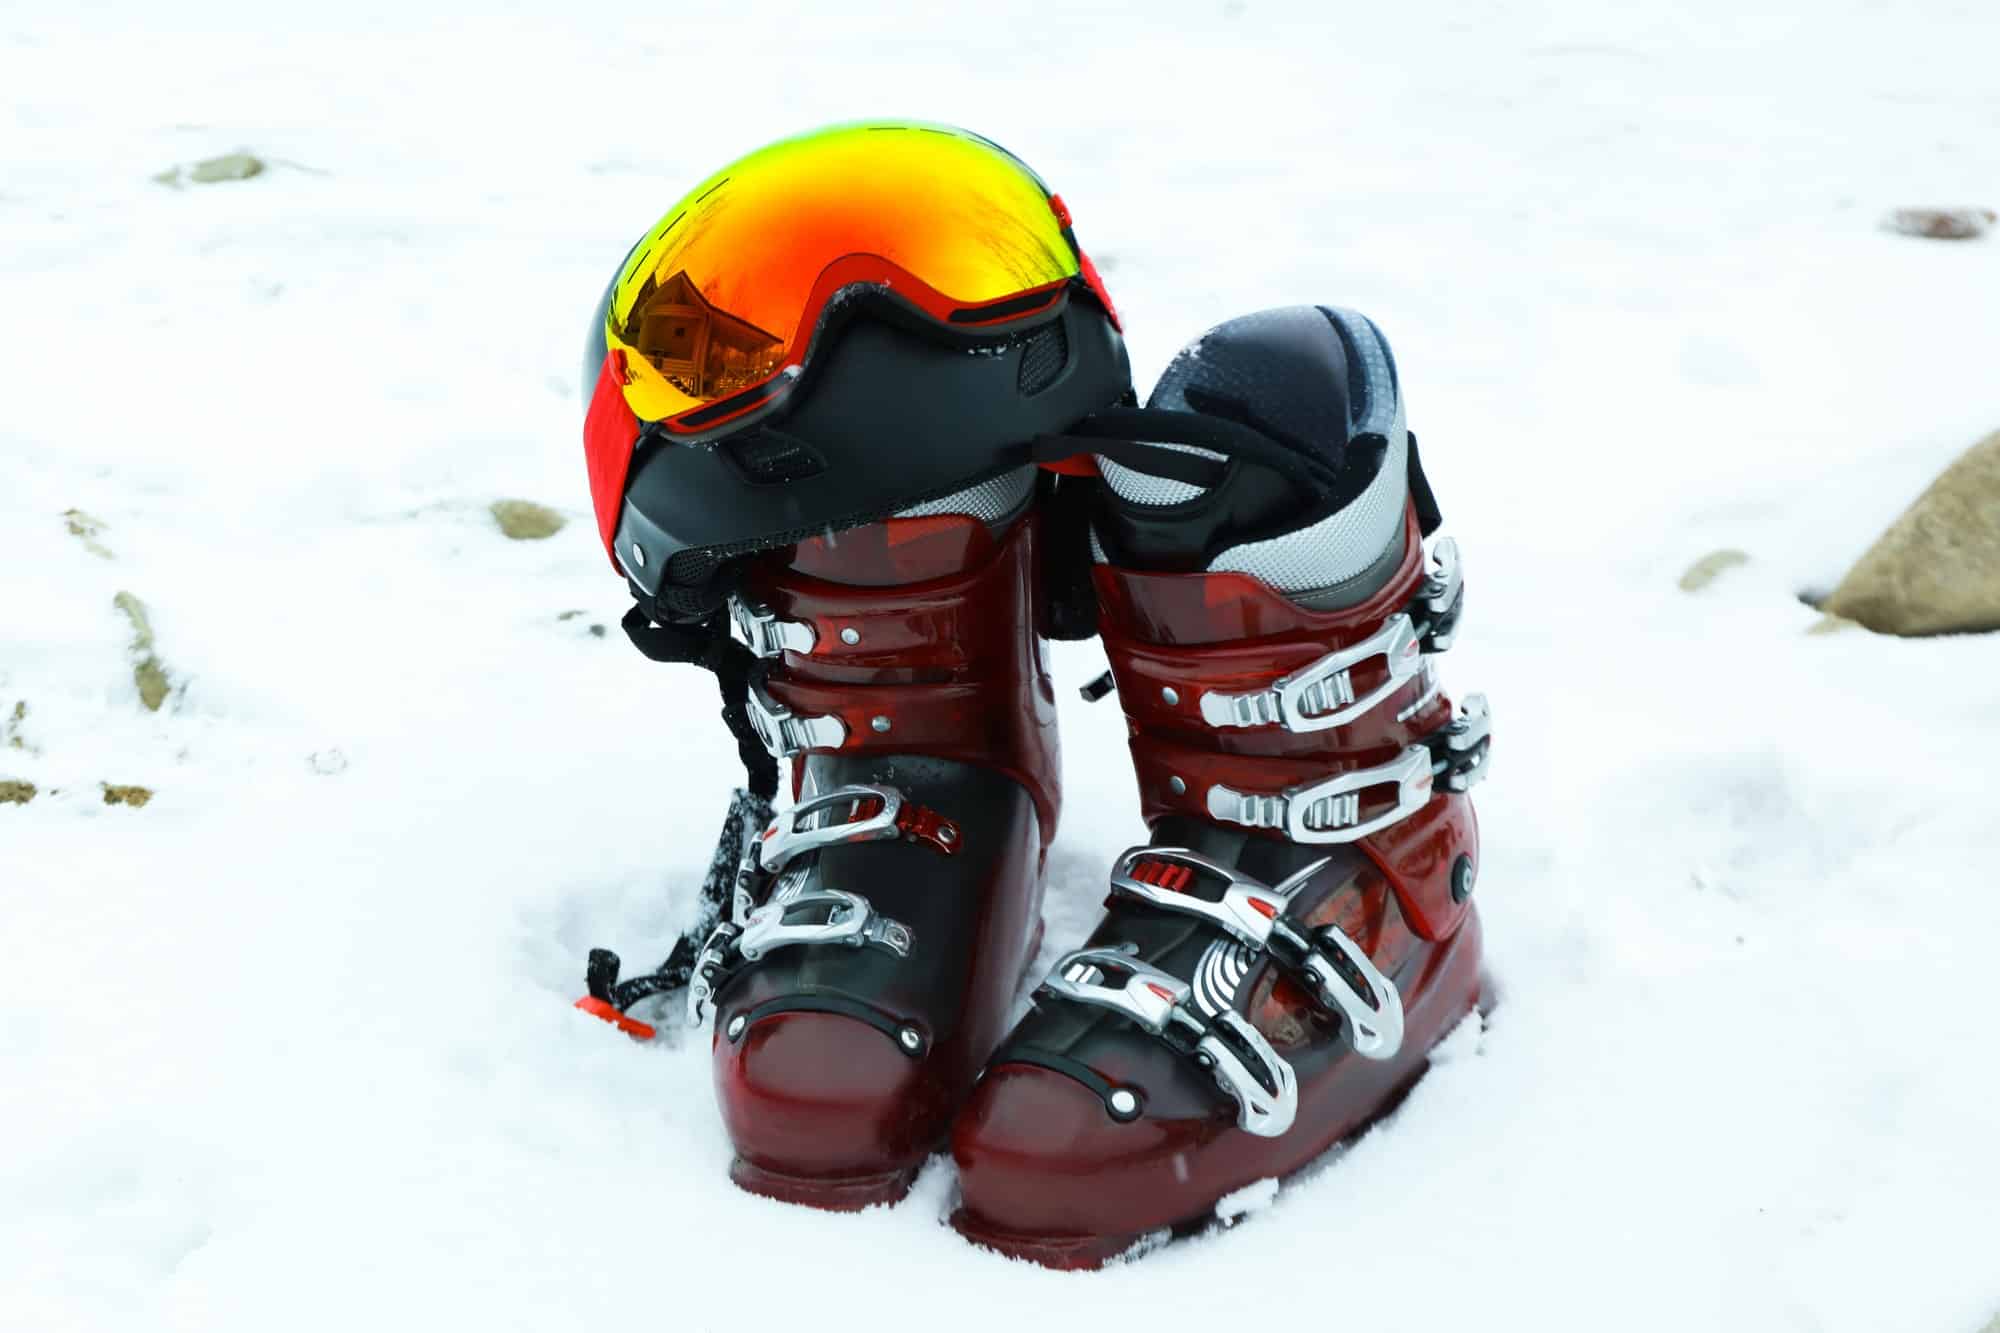 Quels critères prendre en compte pour choisir une chaussure de ski d’occasion ?